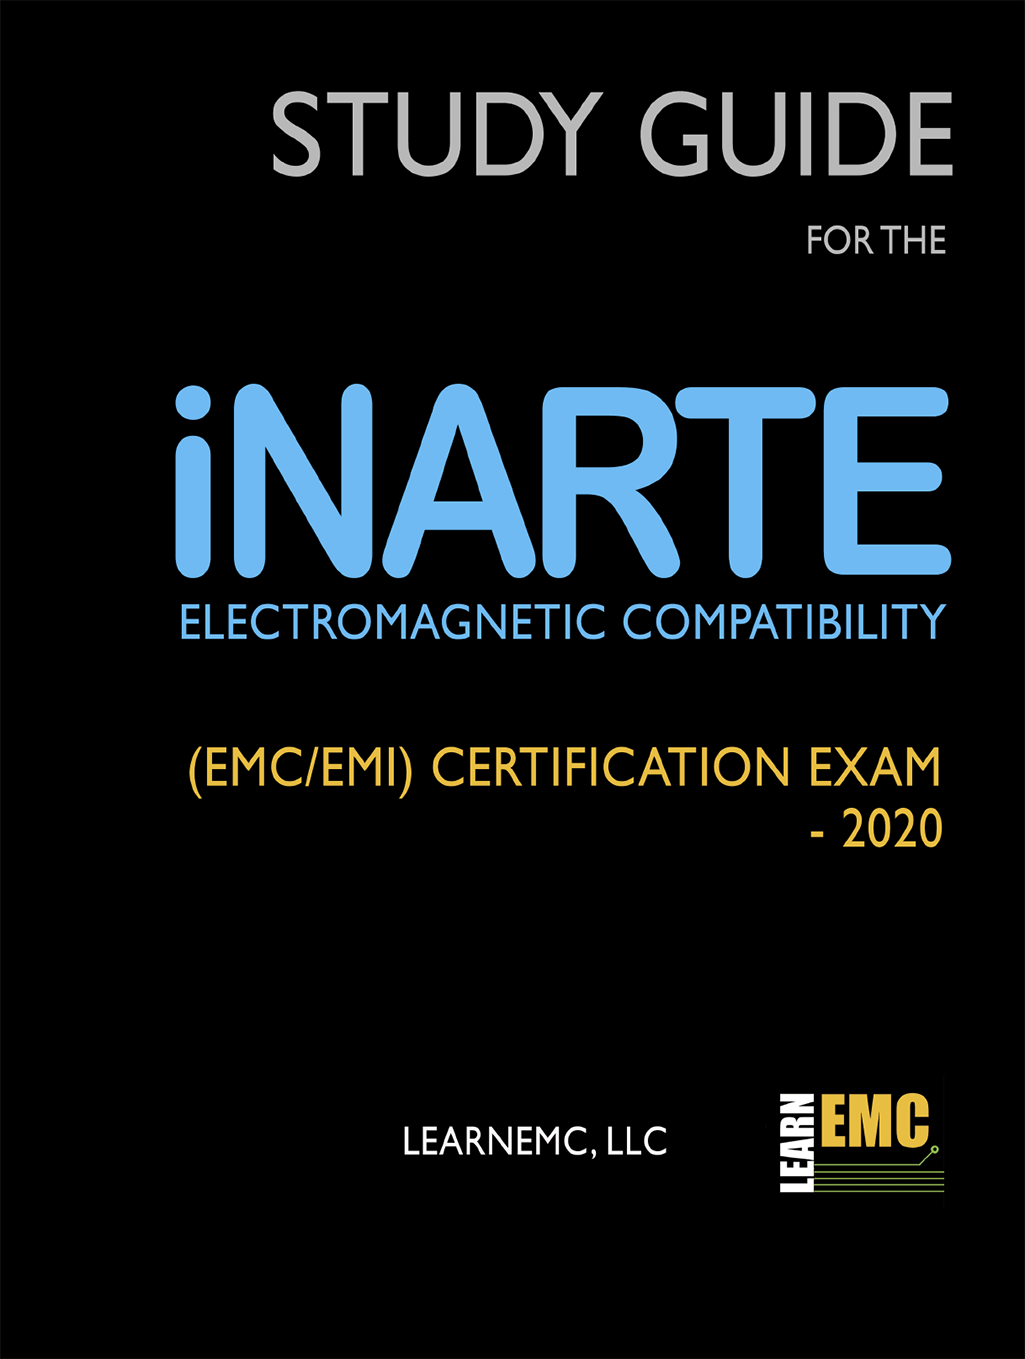 LearnEMC iNARTE Exam Study Guide 2020